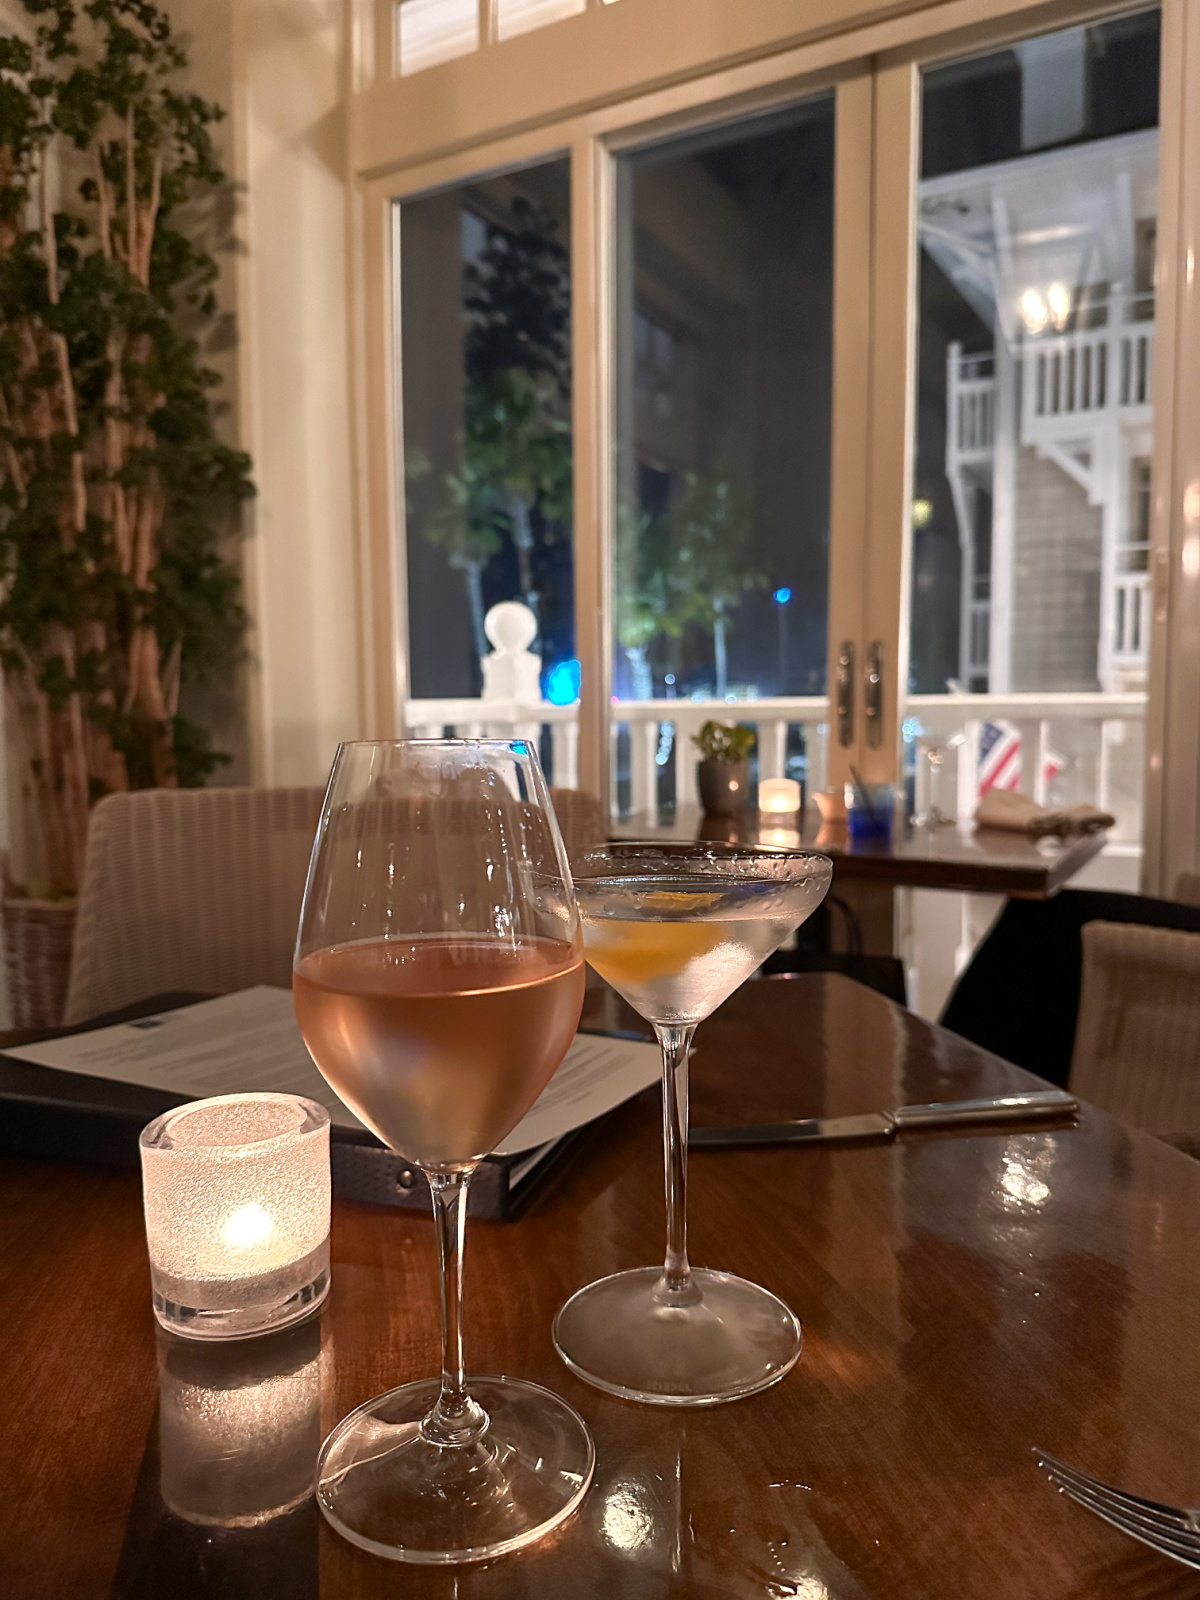 Glass of wine and martini at 1 Pico in Santa Monica.